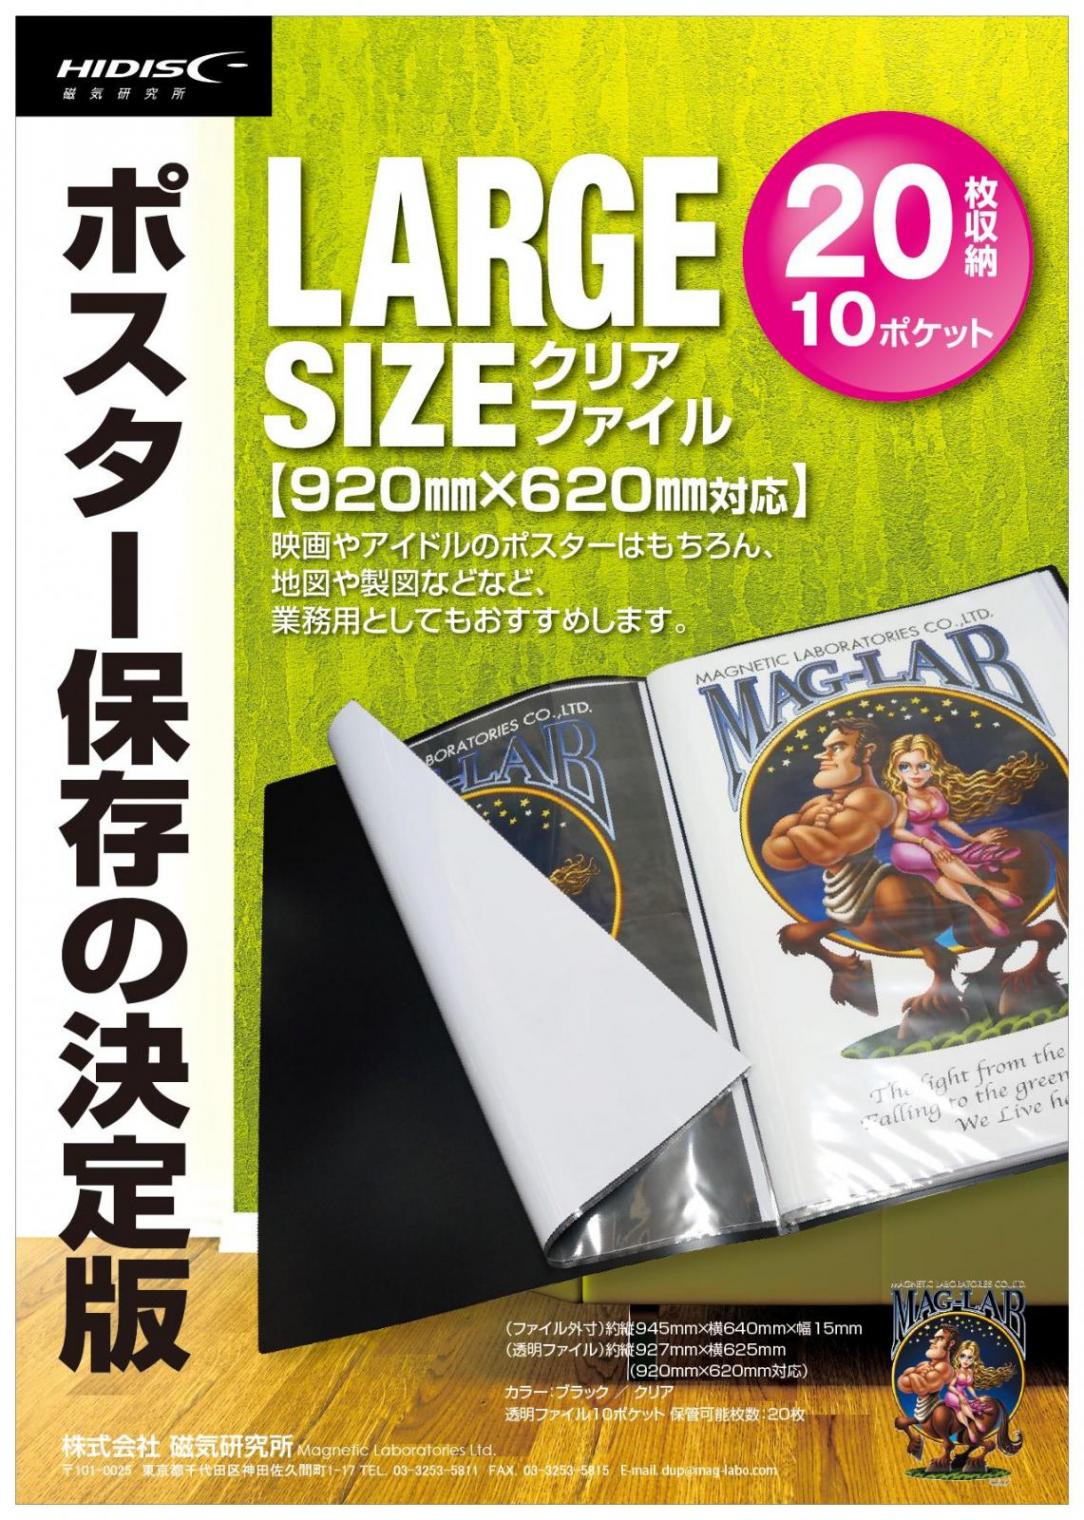 ポスター保存の決定版 ラージサイズクリアファイル 920×620mm対応 ML-LS10BK 【86%OFF!】